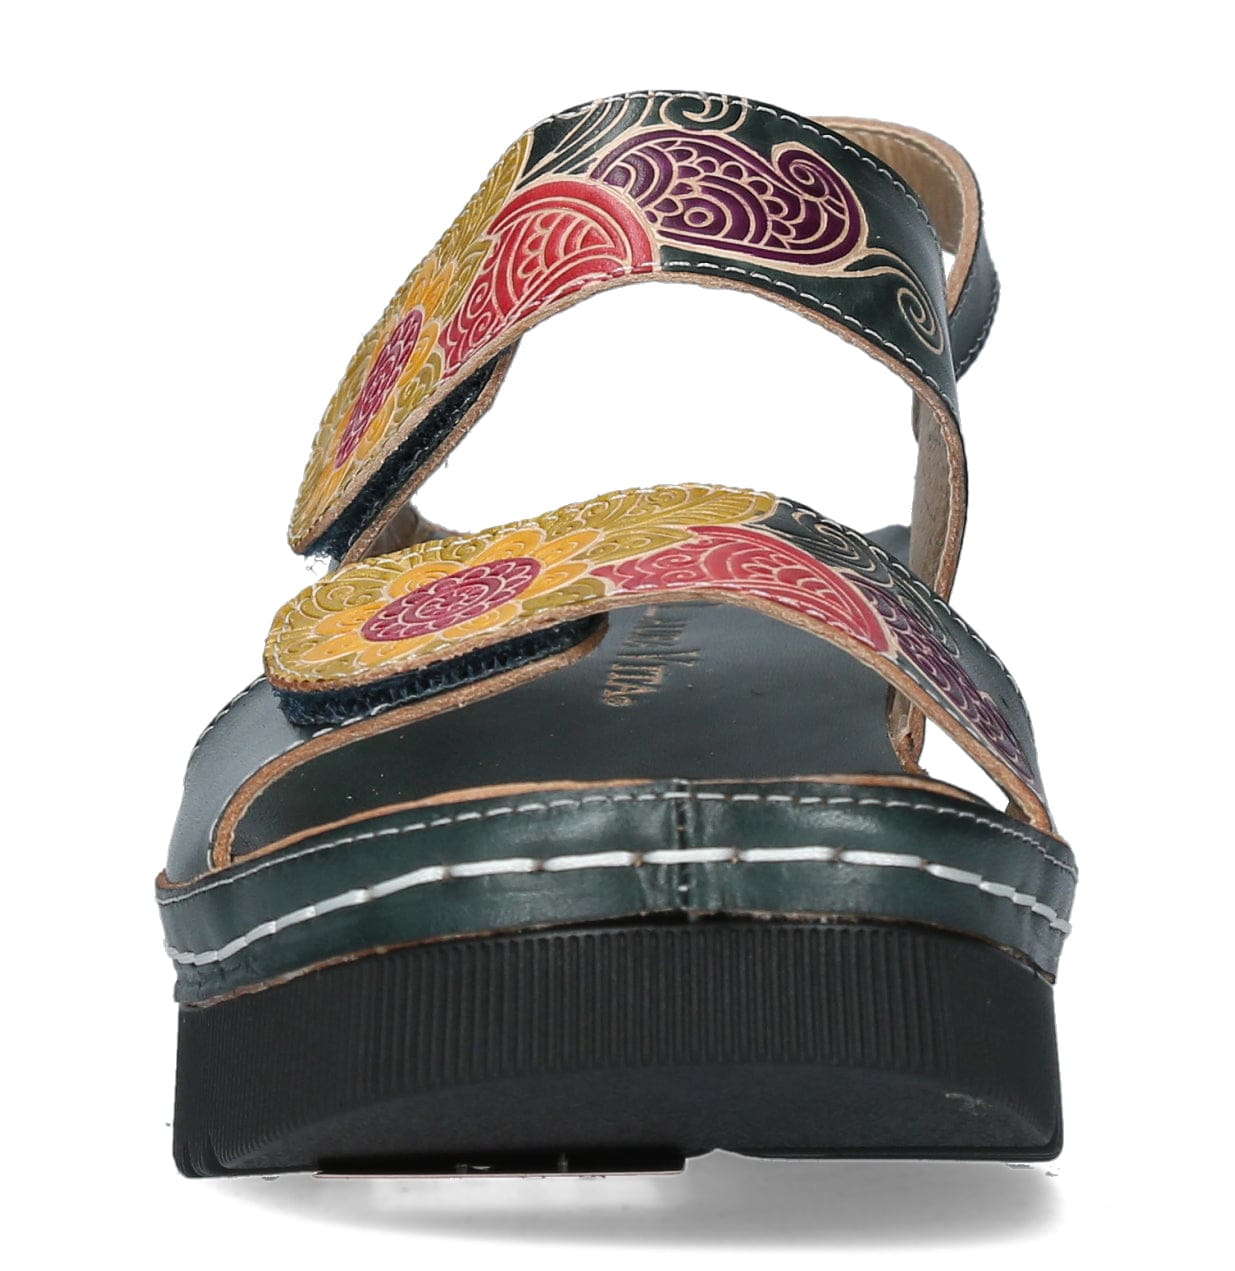 LEXIAO 01 skor - Sandal